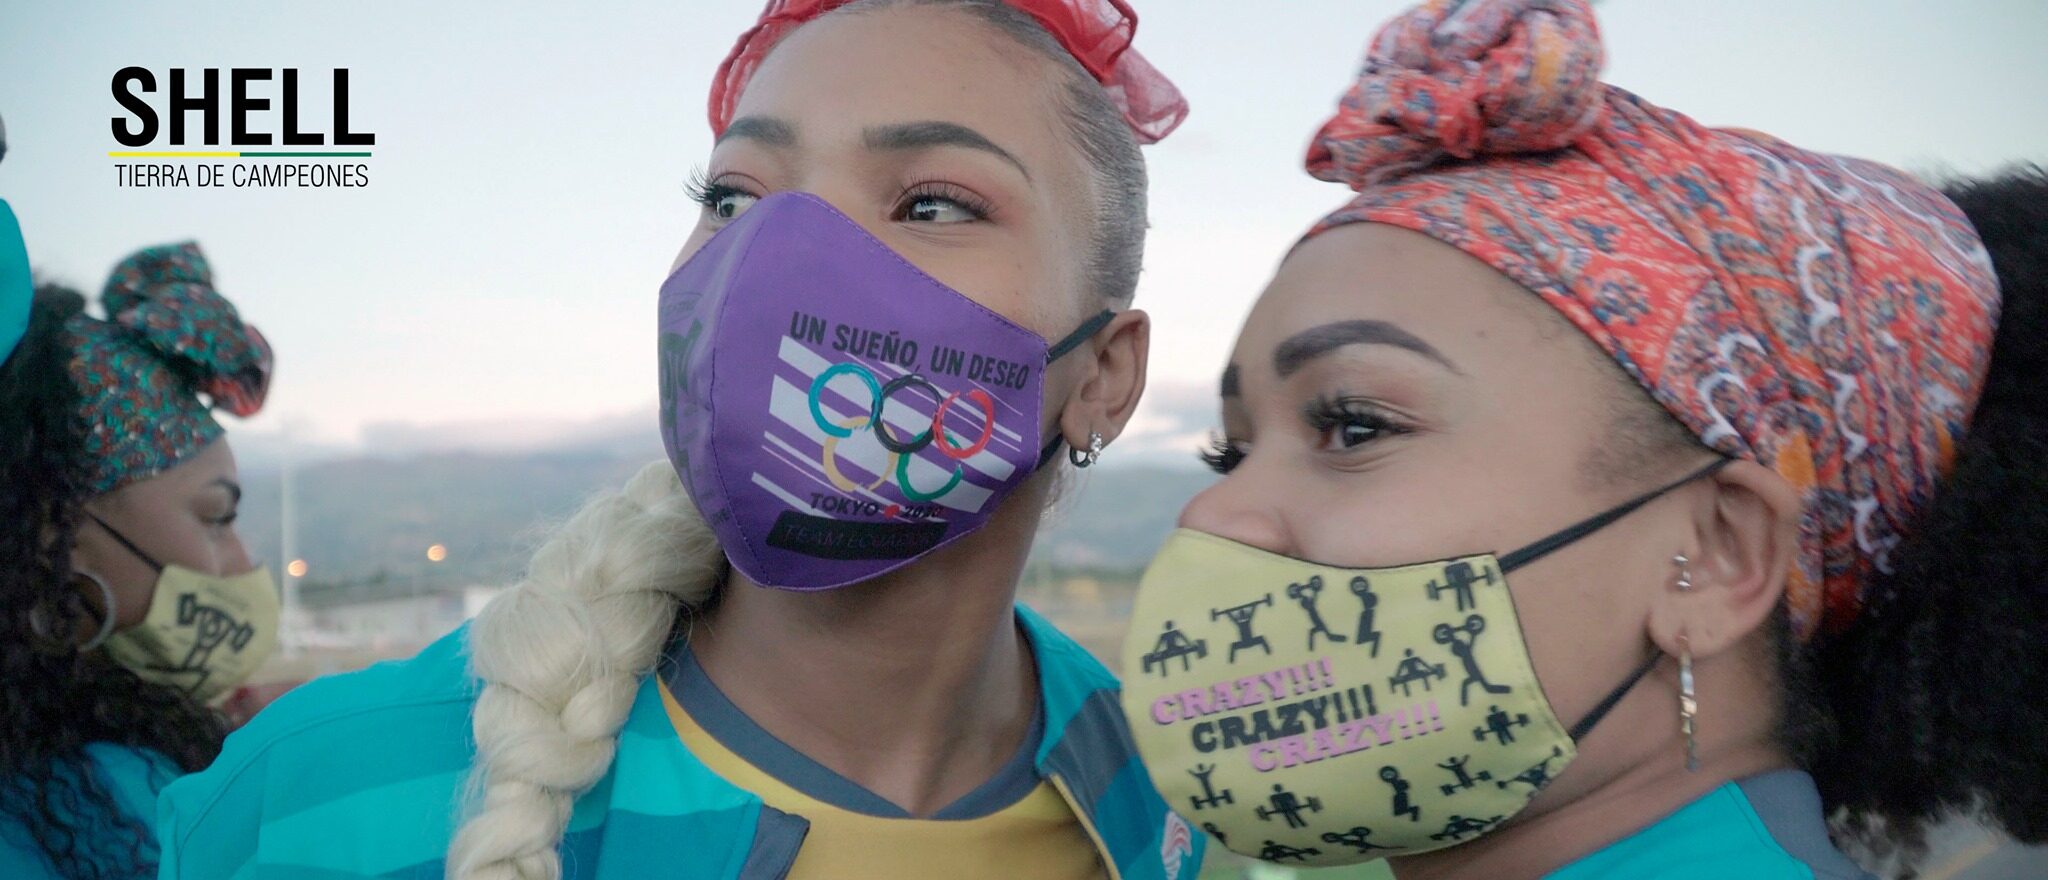 Shell: Tierra de campeones: Película documental ecuatoriana en desarrollo